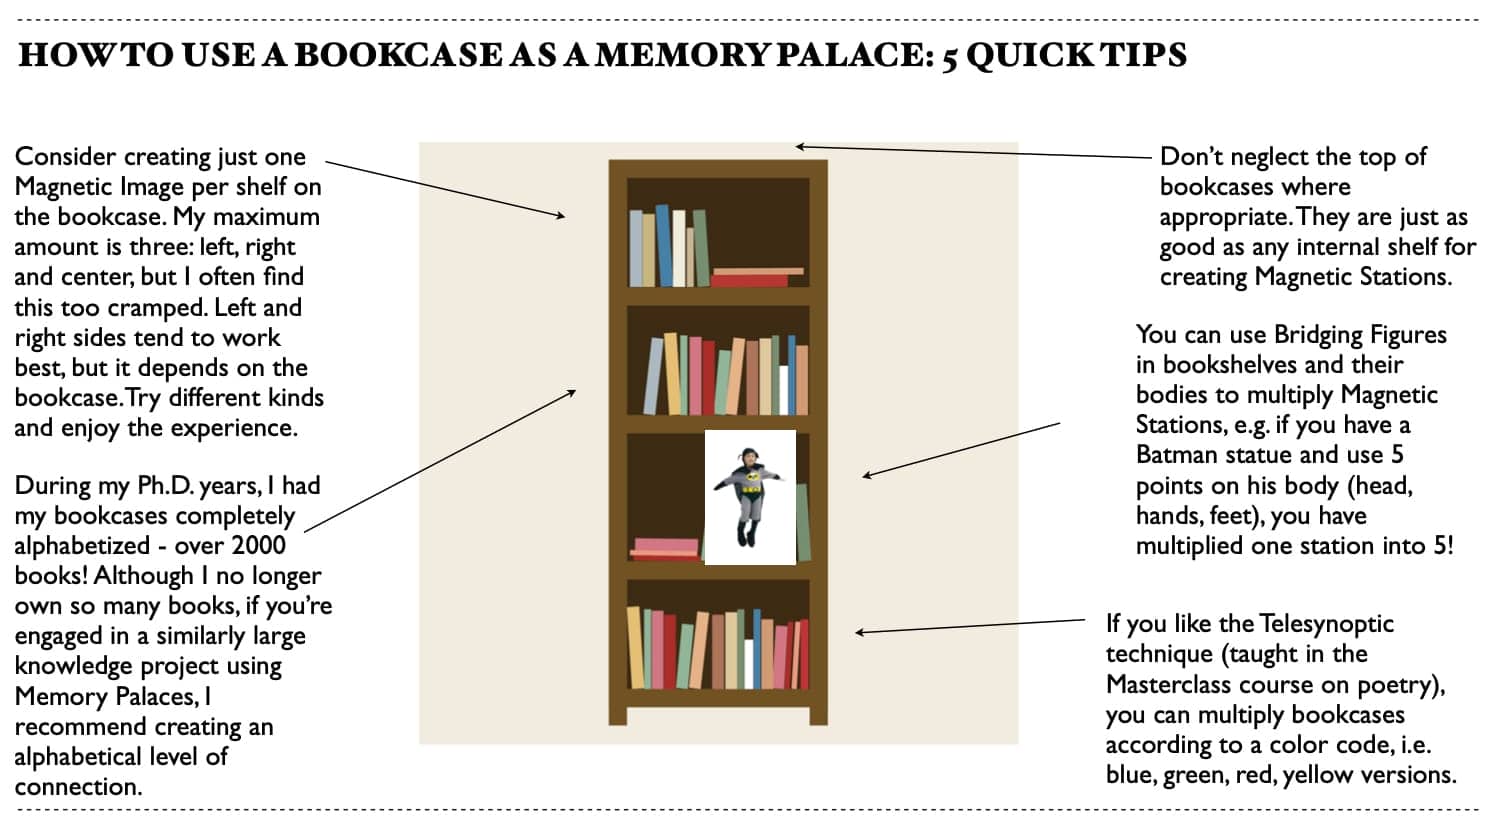 Imaginary bookcase Memory Palace illustration